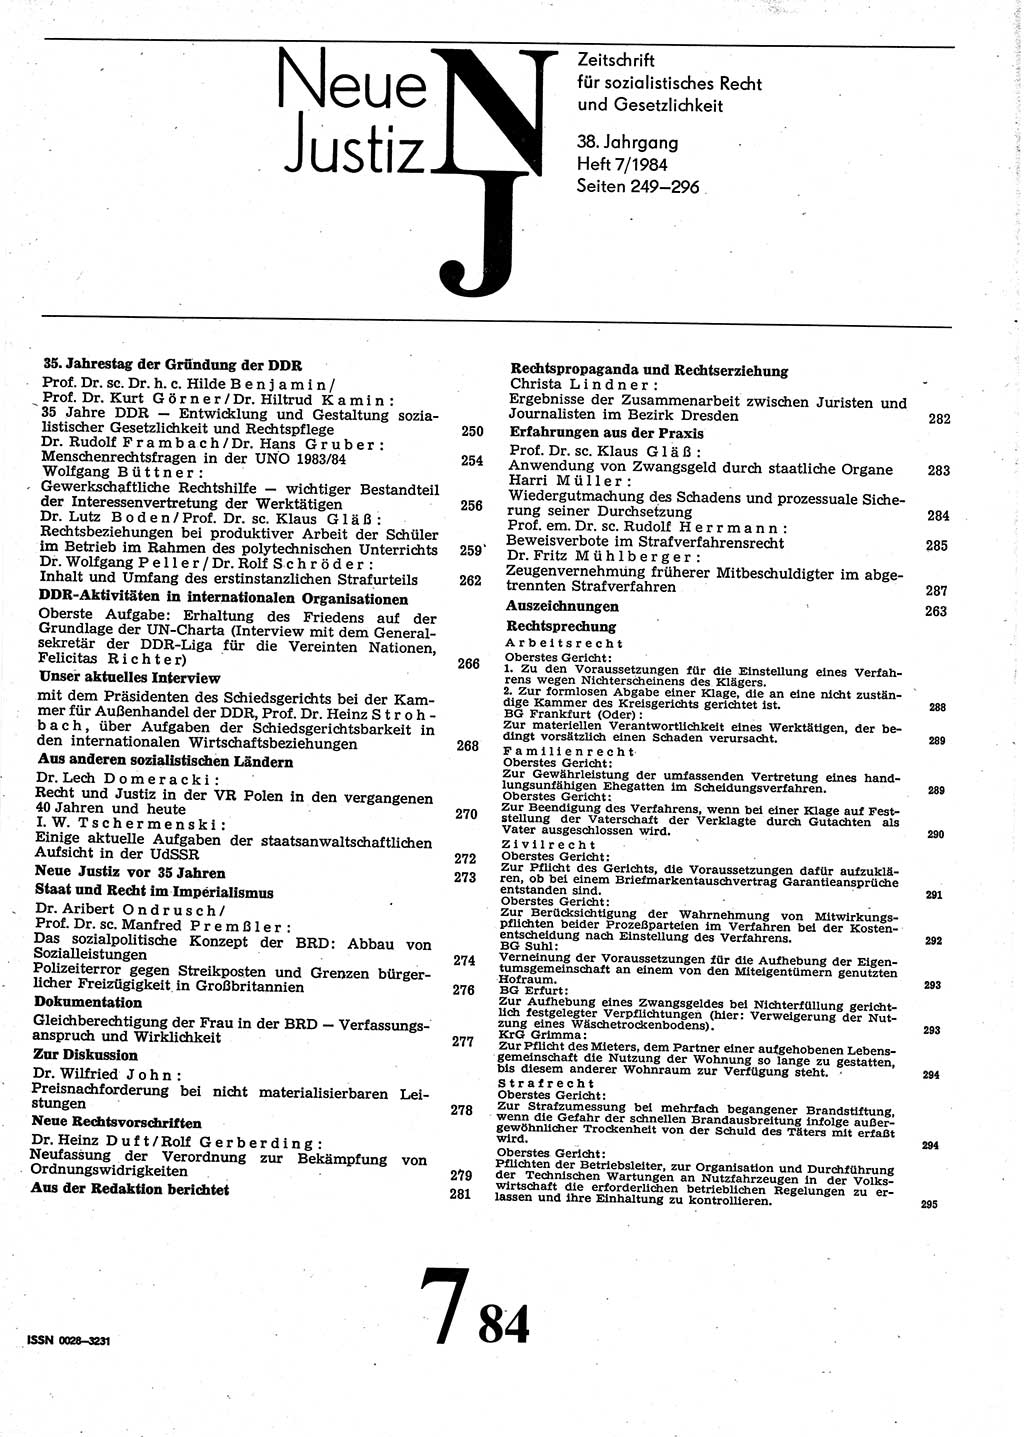 Neue Justiz (NJ), Zeitschrift für sozialistisches Recht und Gesetzlichkeit [Deutsche Demokratische Republik (DDR)], 38. Jahrgang 1984, Seite 249 (NJ DDR 1984, S. 249)